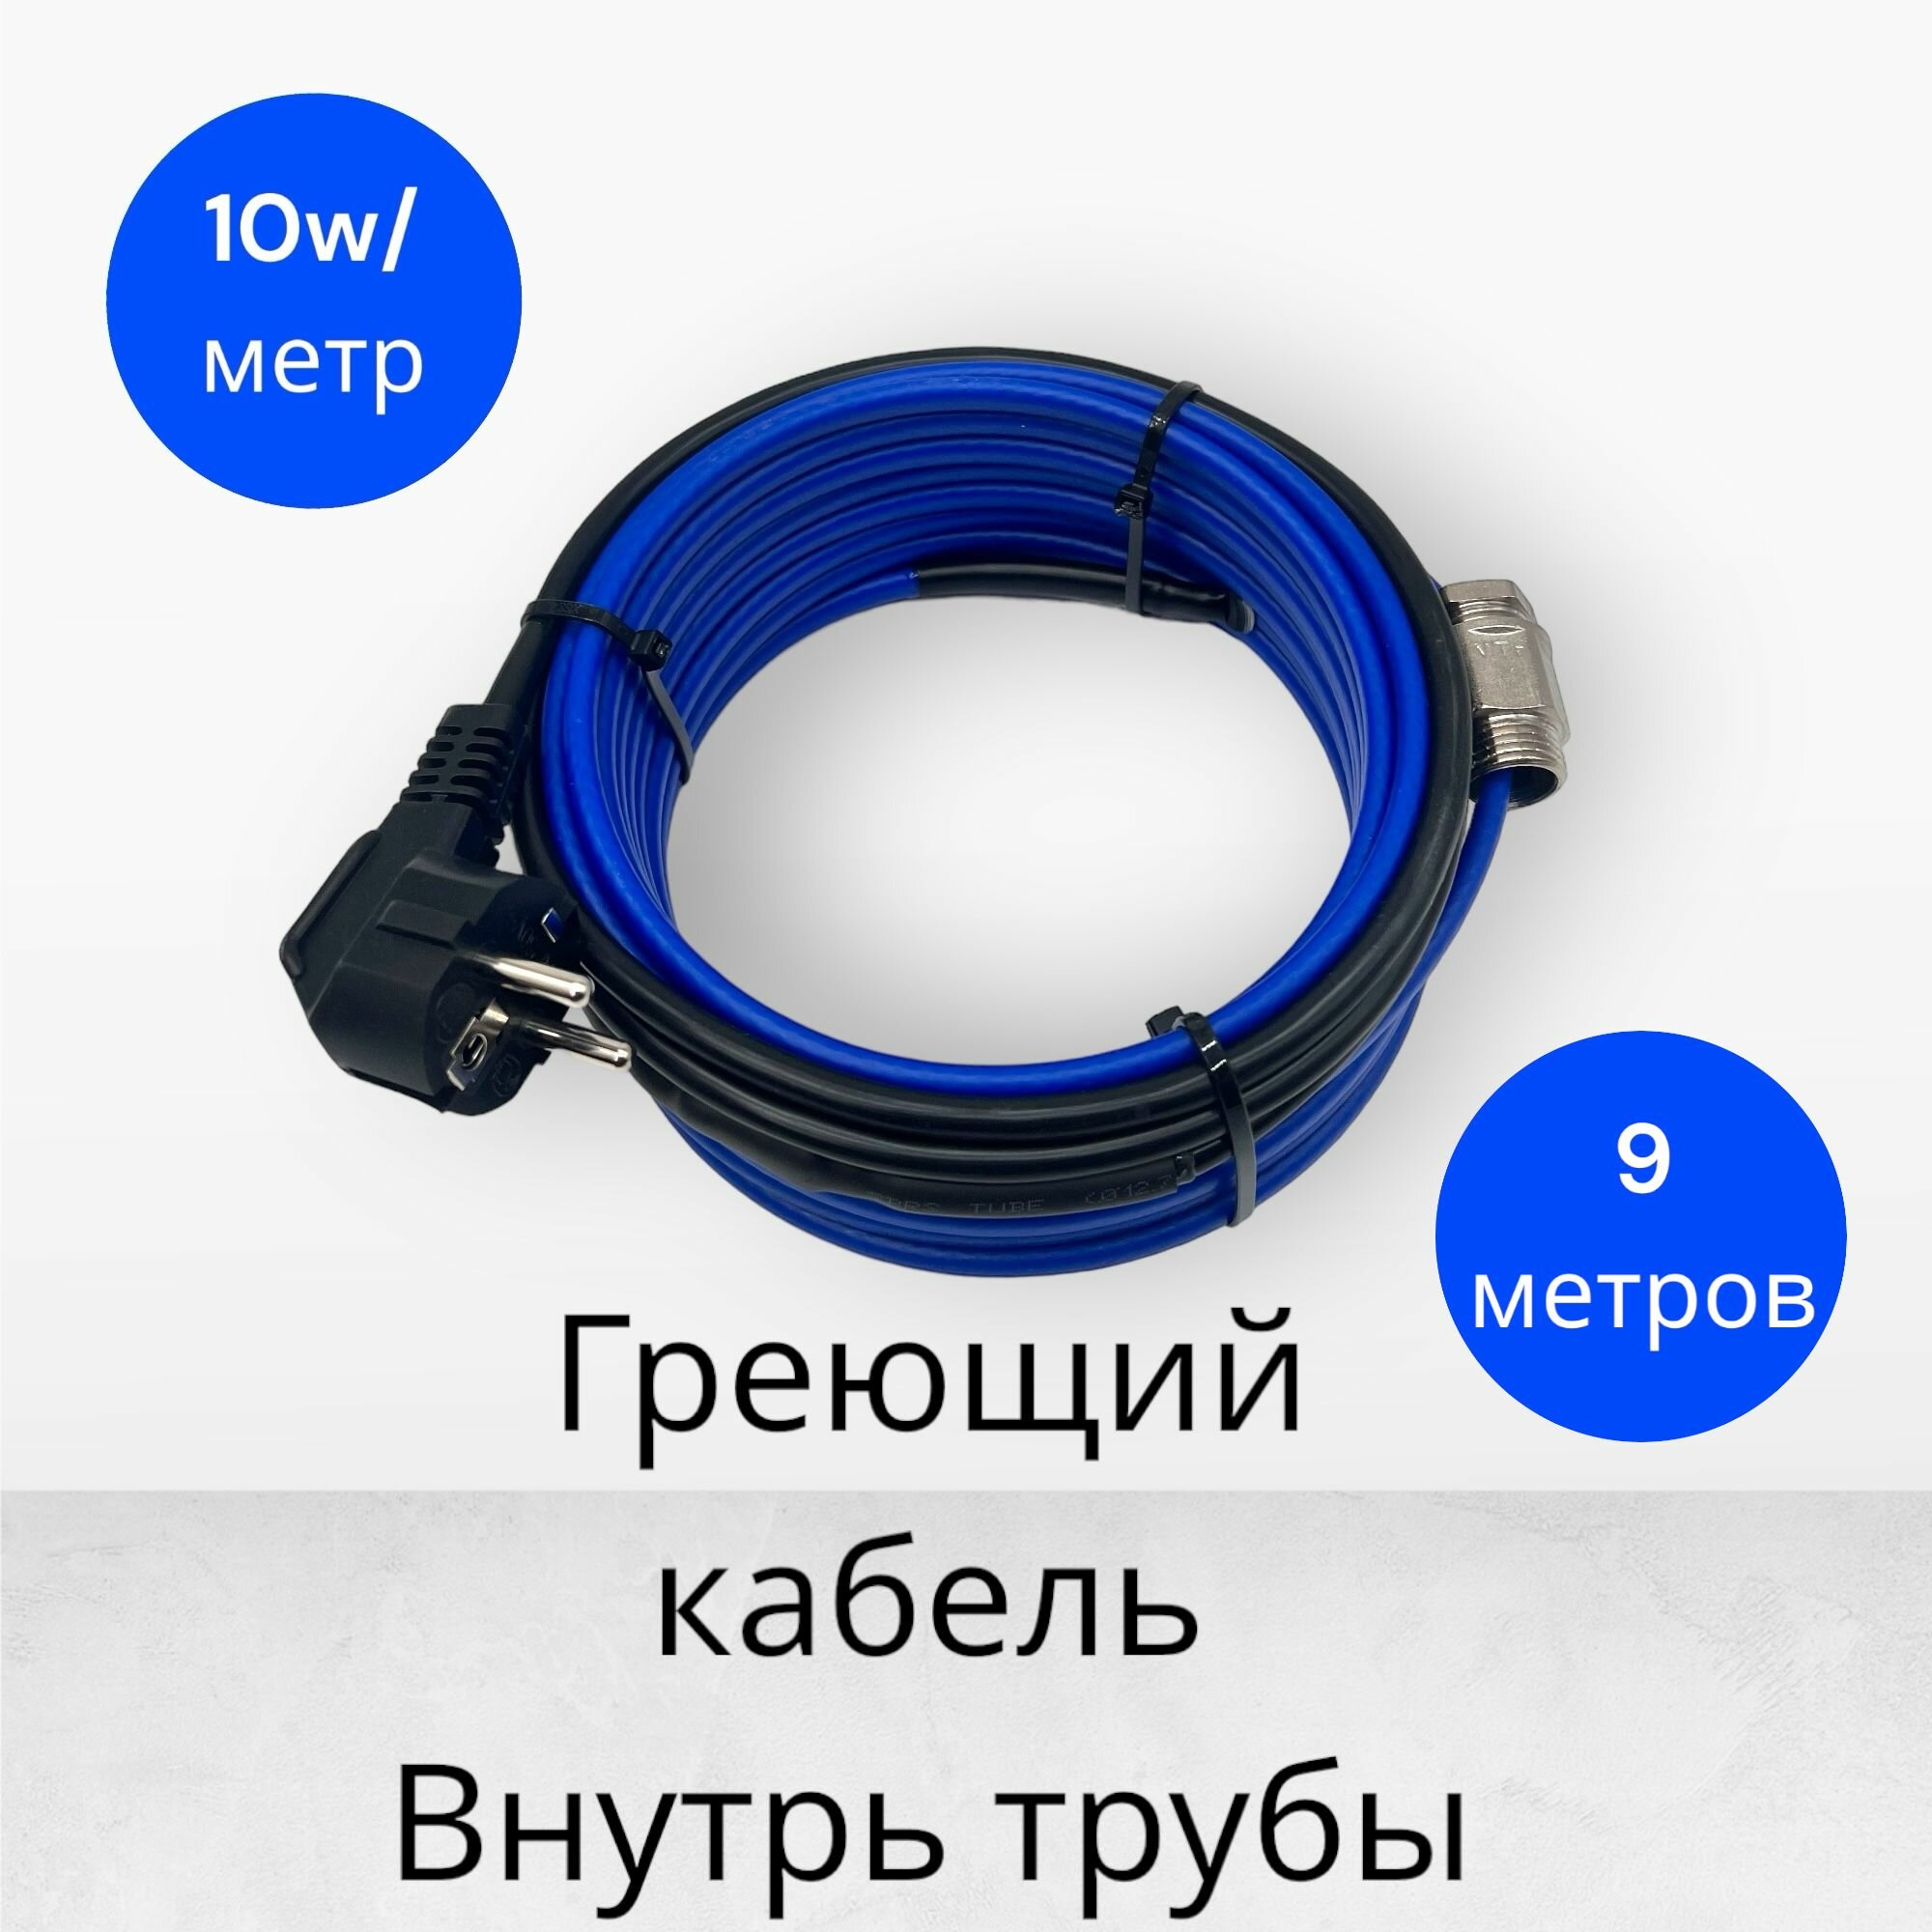 Греющий саморегулирующийся кабель внутрь трубы TM PRO - 10Вт/м (9м. комплект)